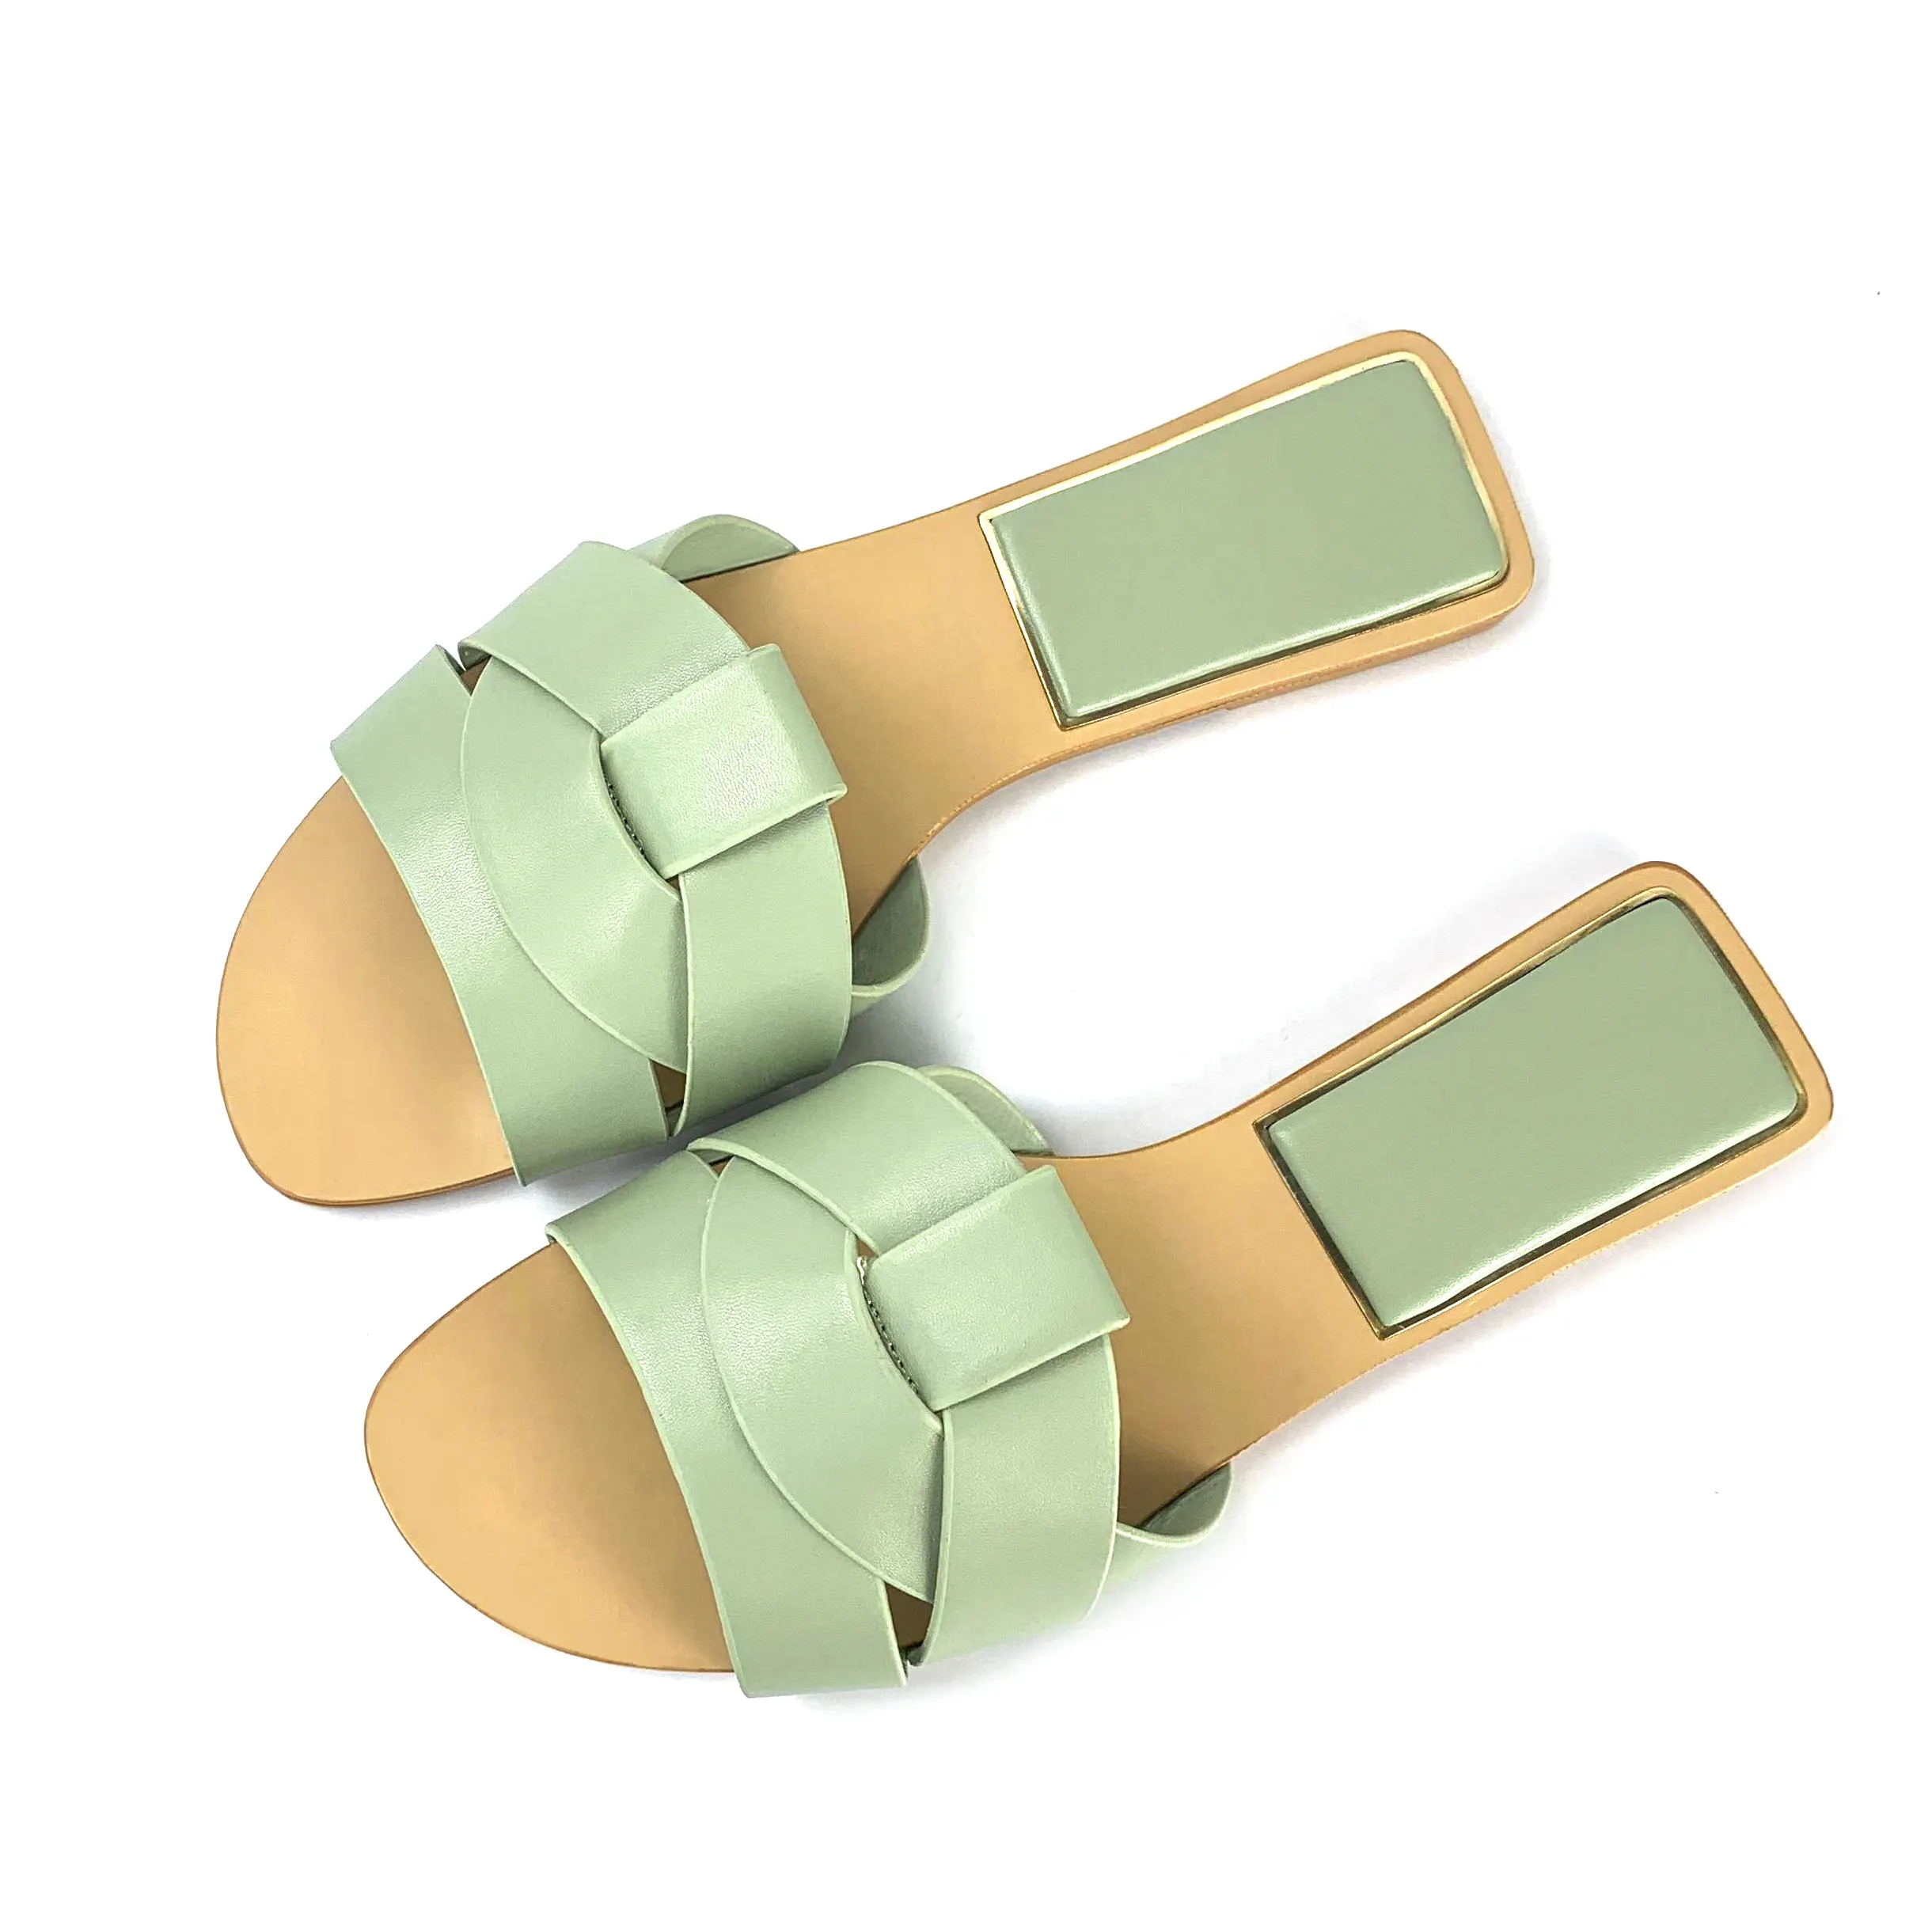 Nuevo diseño de verano zapatos planos de las mujeres zapatos de punta abierta simple damas sandalias playa Tropical zapatos de estilo